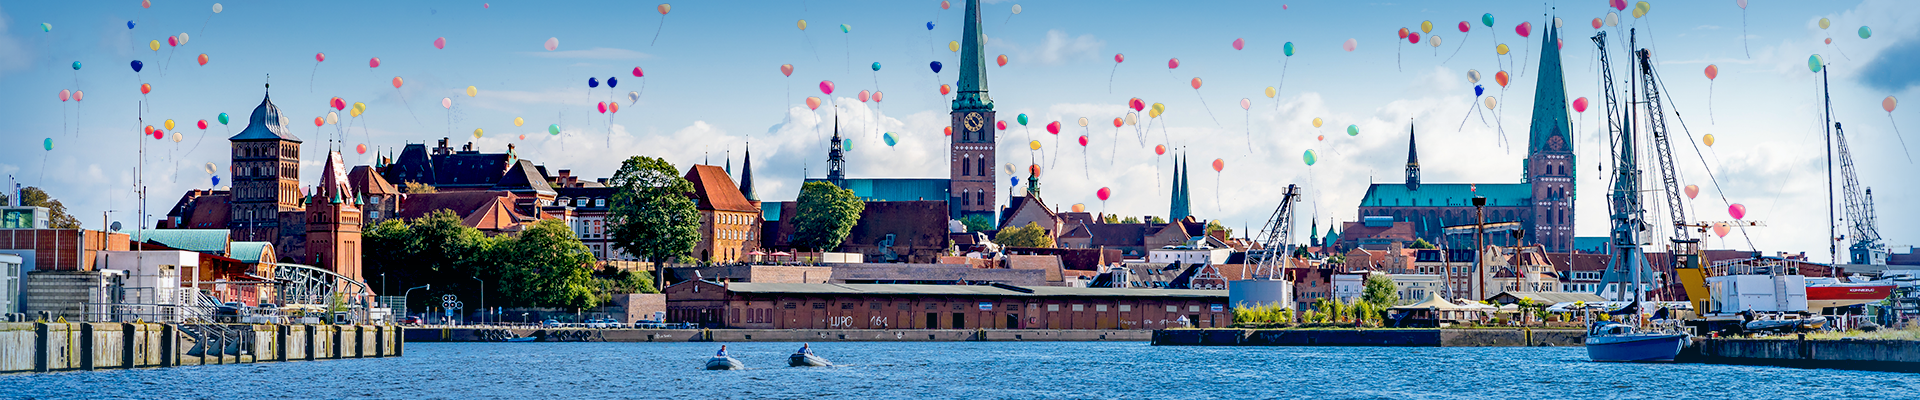 Ansicht der Stadt Lübeck vom Wasser aus, bunte Luftballons steigen in den Himmel